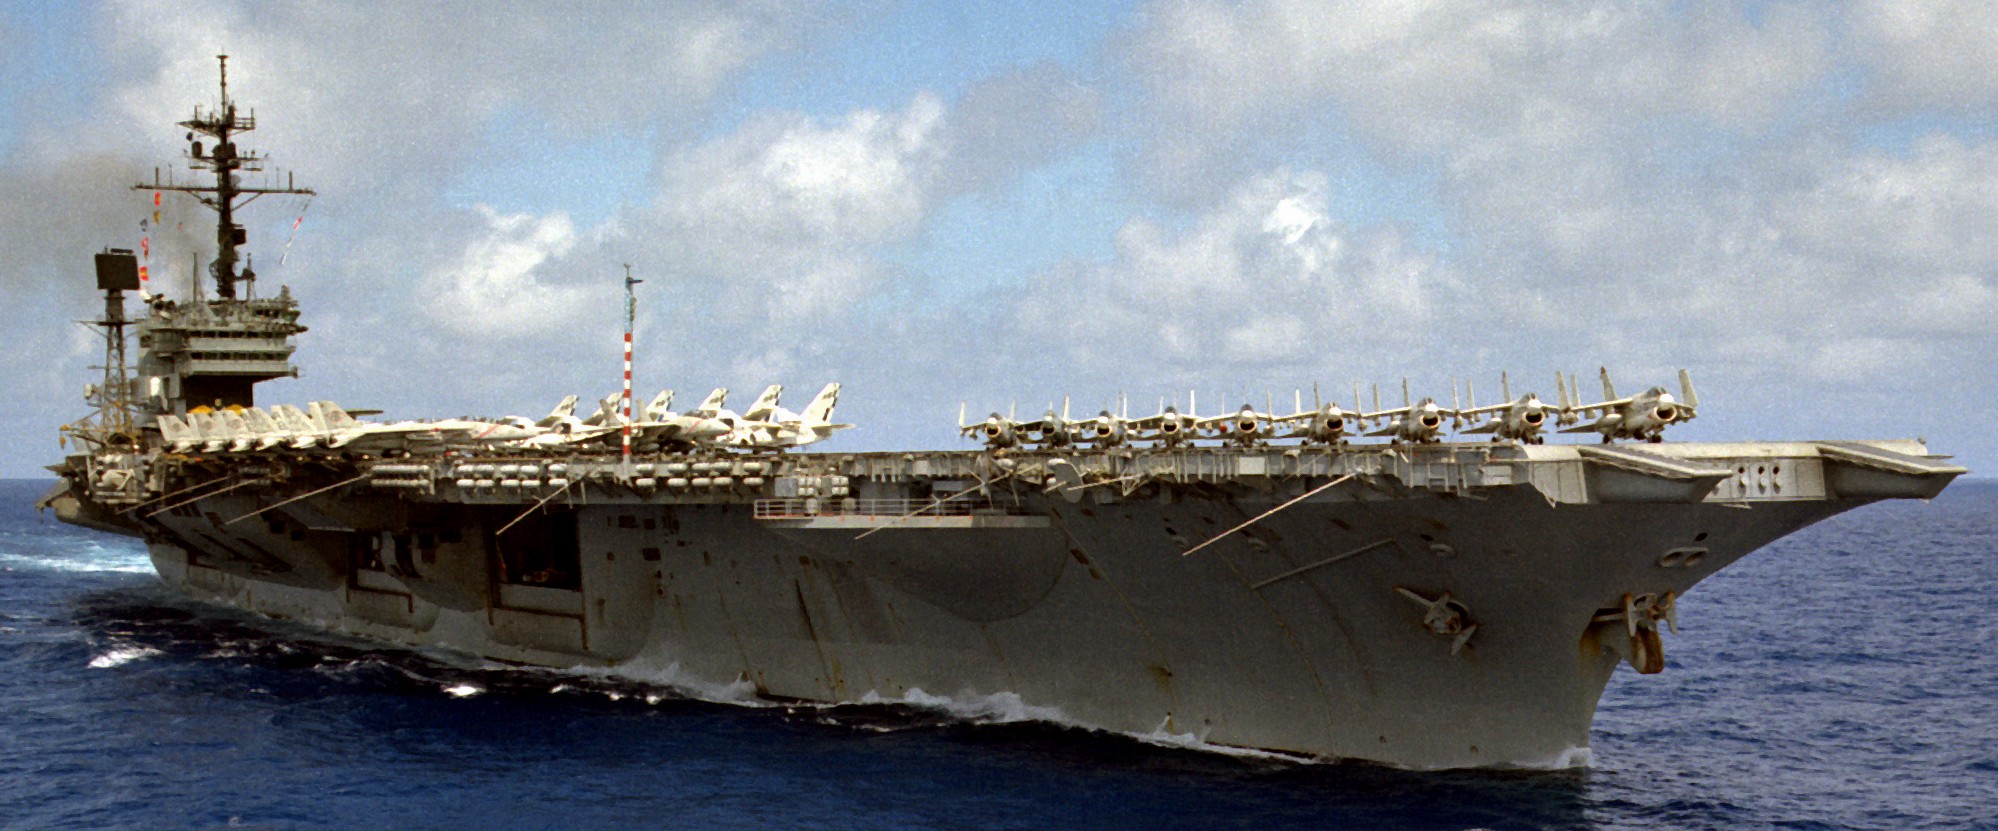 cv-66 uss america kitty hawk class aircraft carrier air wing cvw-1 us navy 54